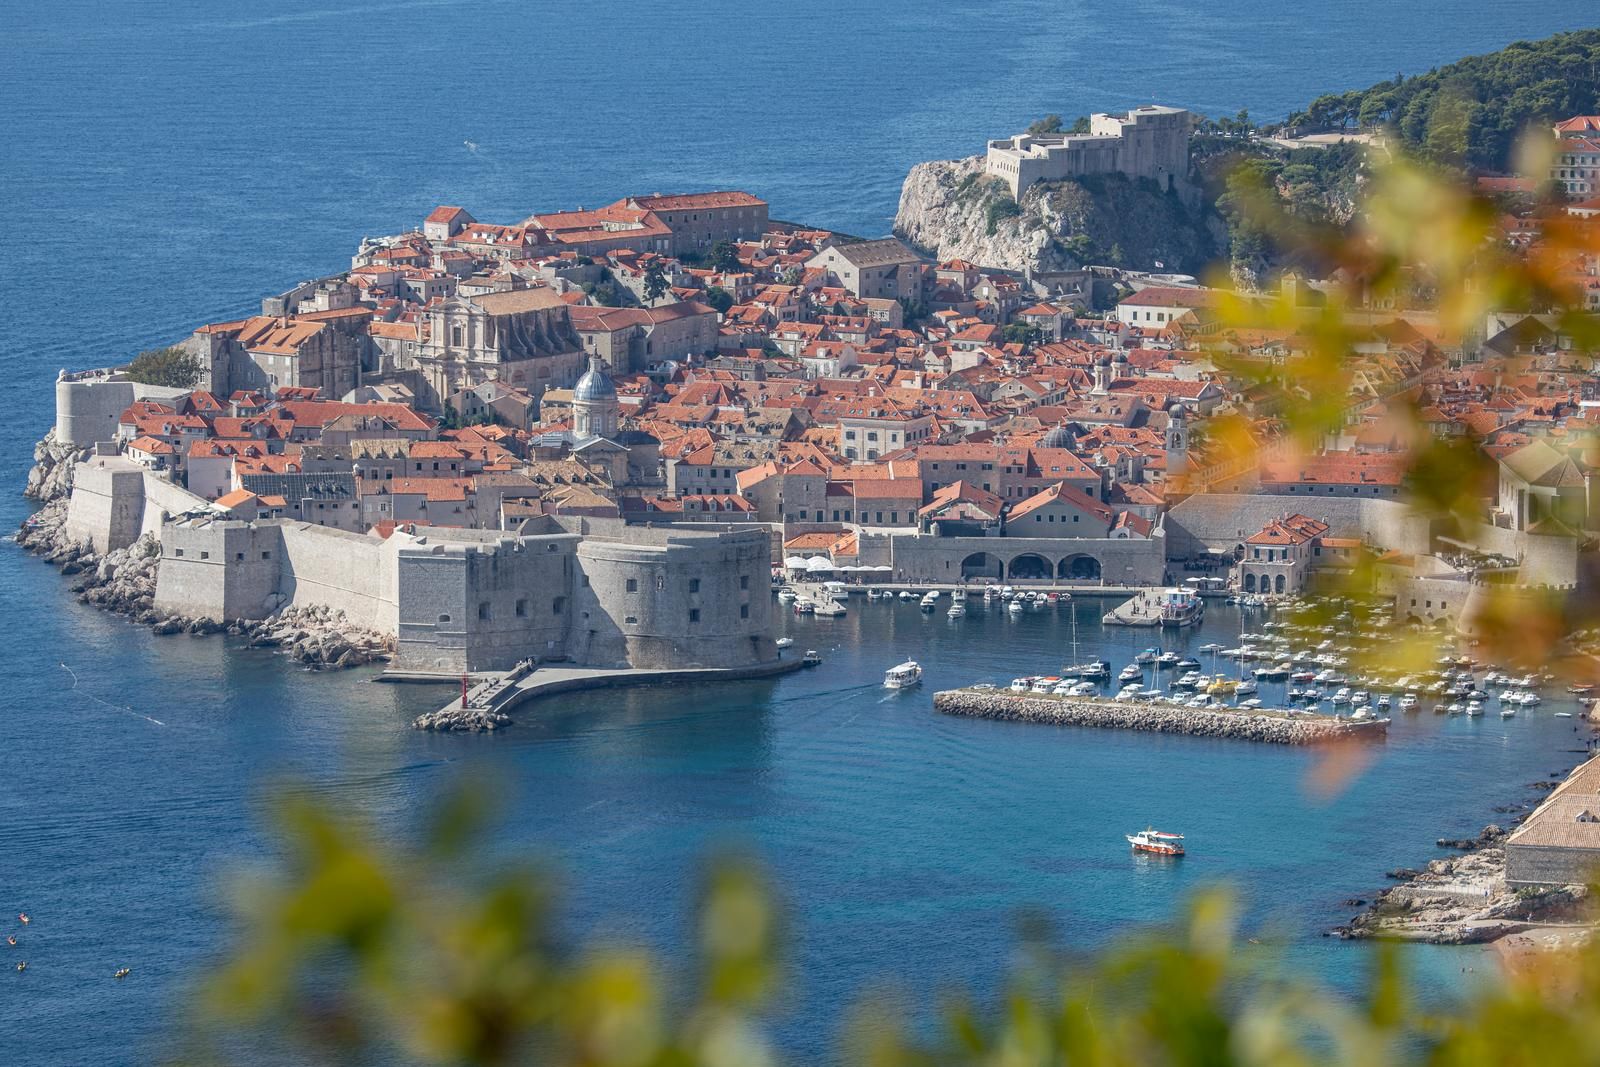 19.10.2021., Bosanka, Dubrovnik - Pogled na staru gradsku jezgru s Bosanke.
Photo: Grgo Jelavic/PIXSELL